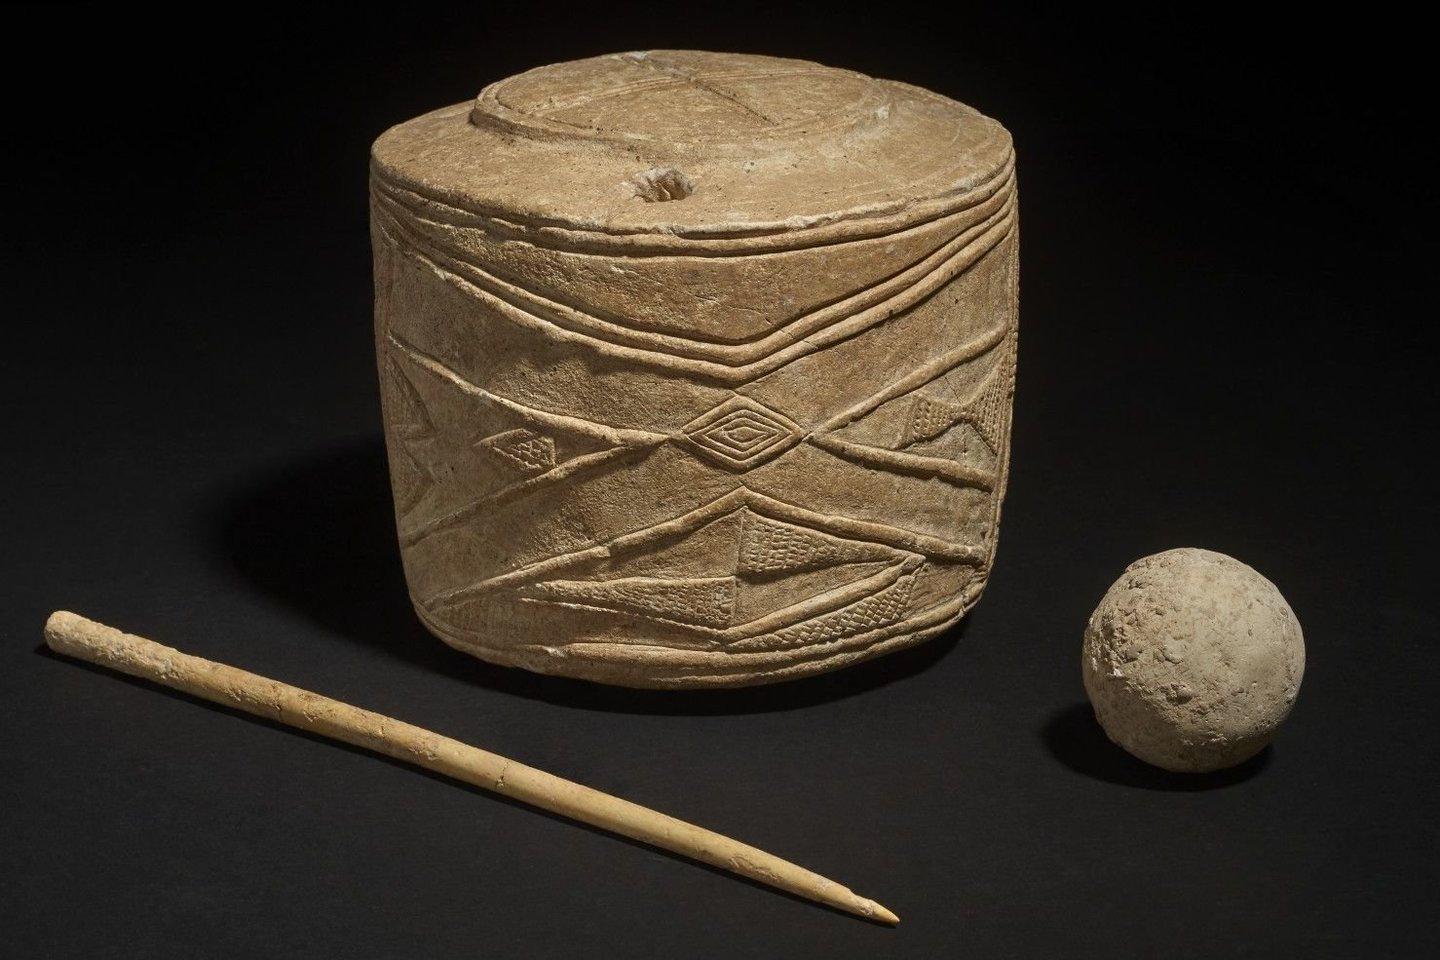  Kreidos skulptūrėlė, kaulinis smeigtukas ir rutuliukas, rasti vaikų kape, kuris datuojamas maždaug 5000 metų.<br> Britų muziejaus nuotr.